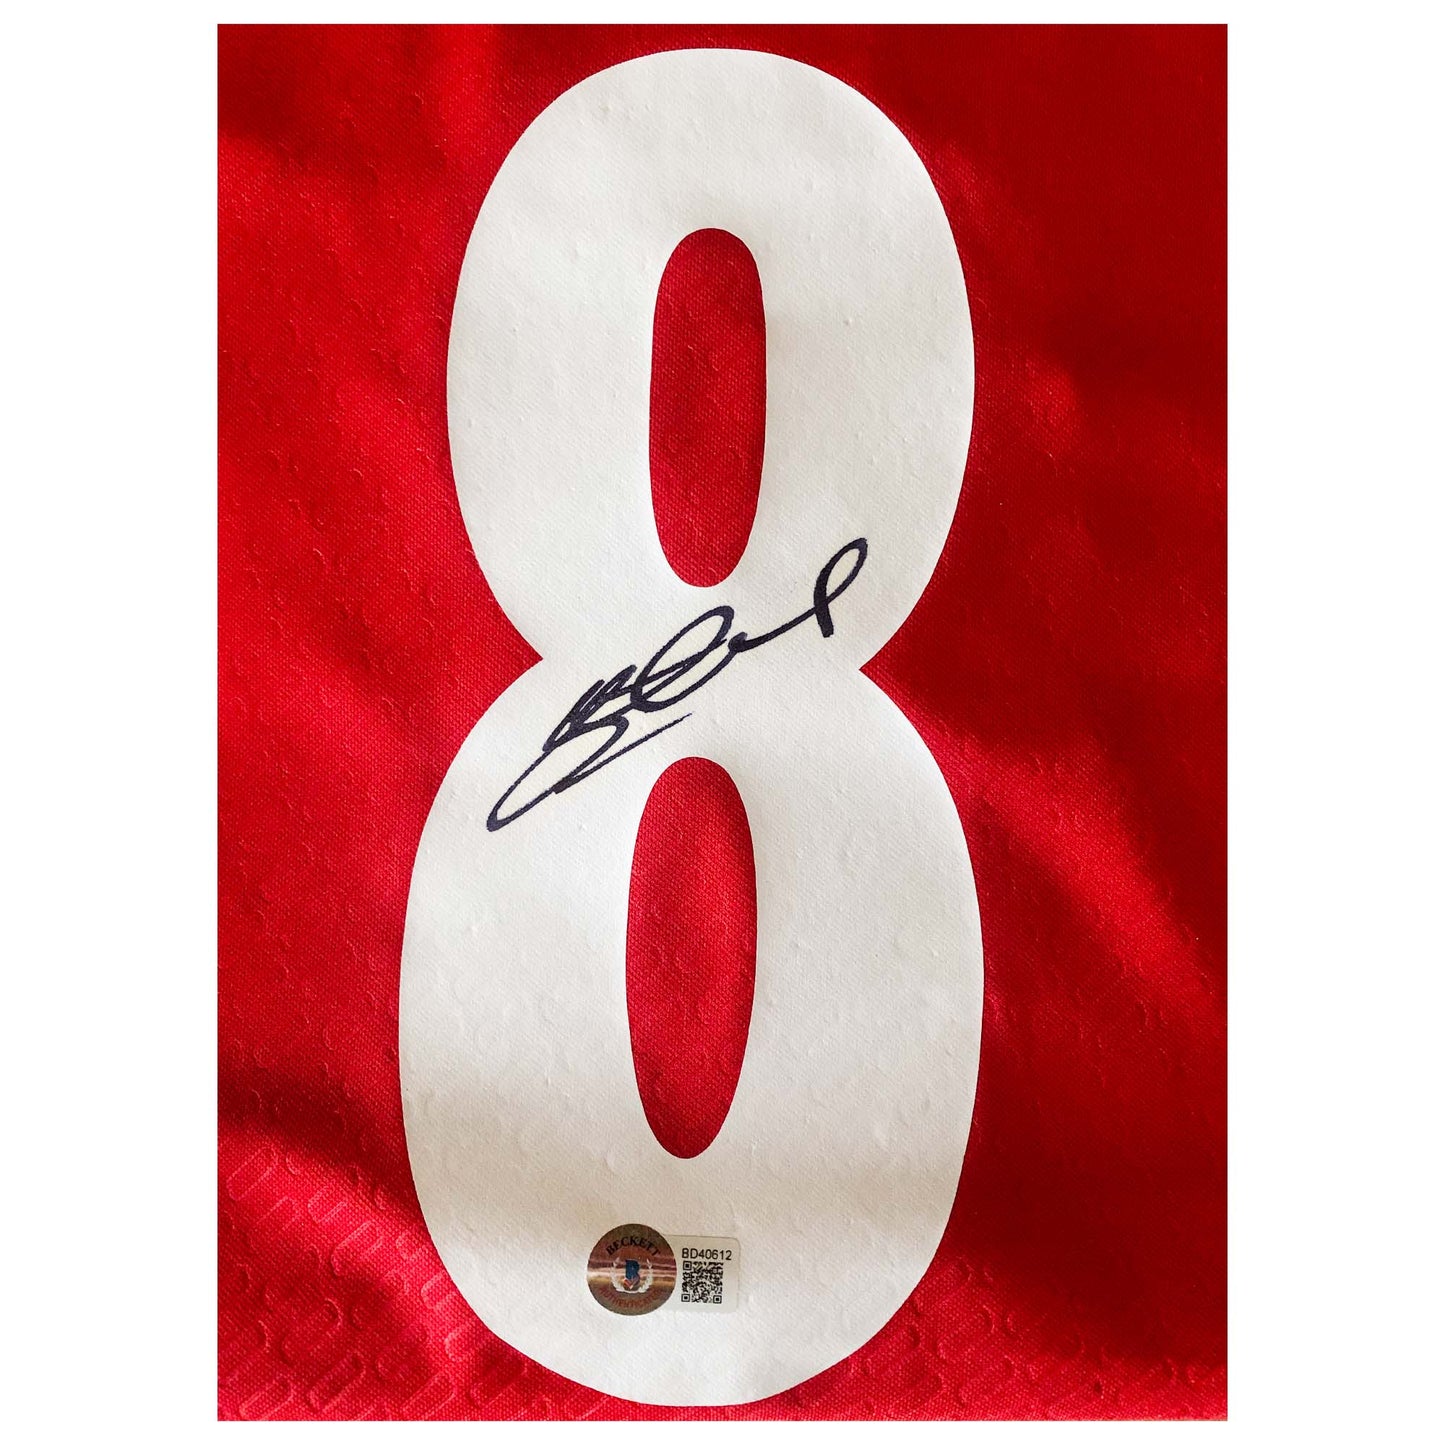 Steven Gerrard Signed Liverpool Jersey Autograph